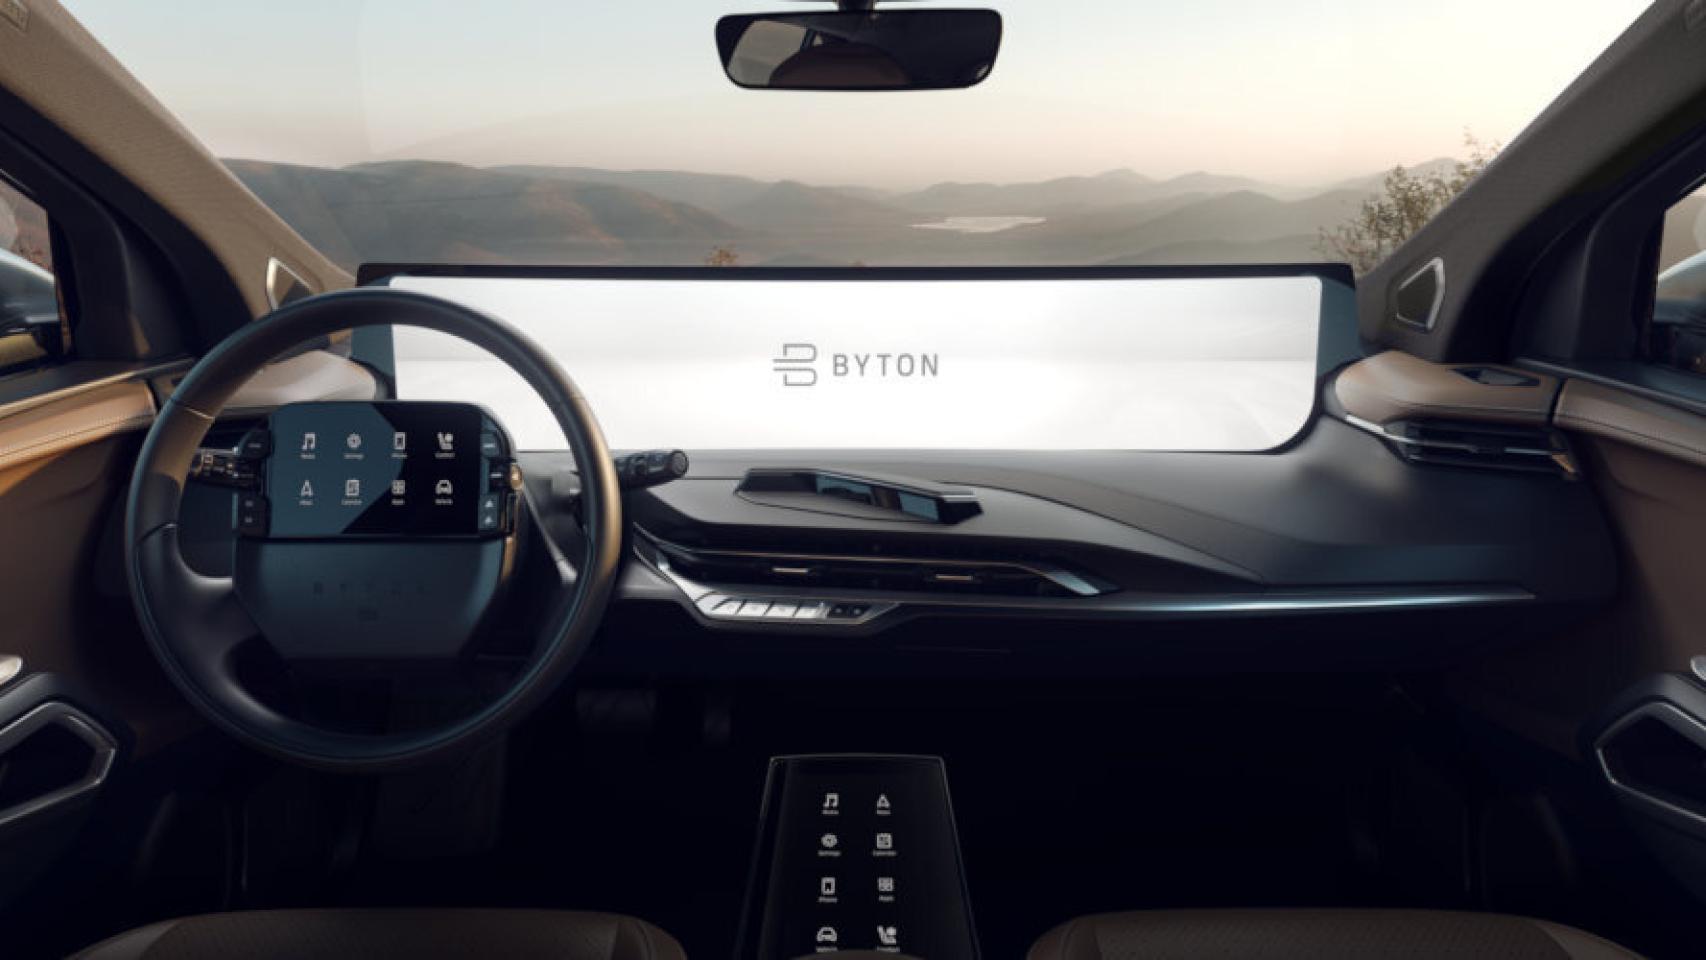 Los fabricantes de coches se empeñan en integrar pantallas táctiles y eso  quizás sea una mala idea